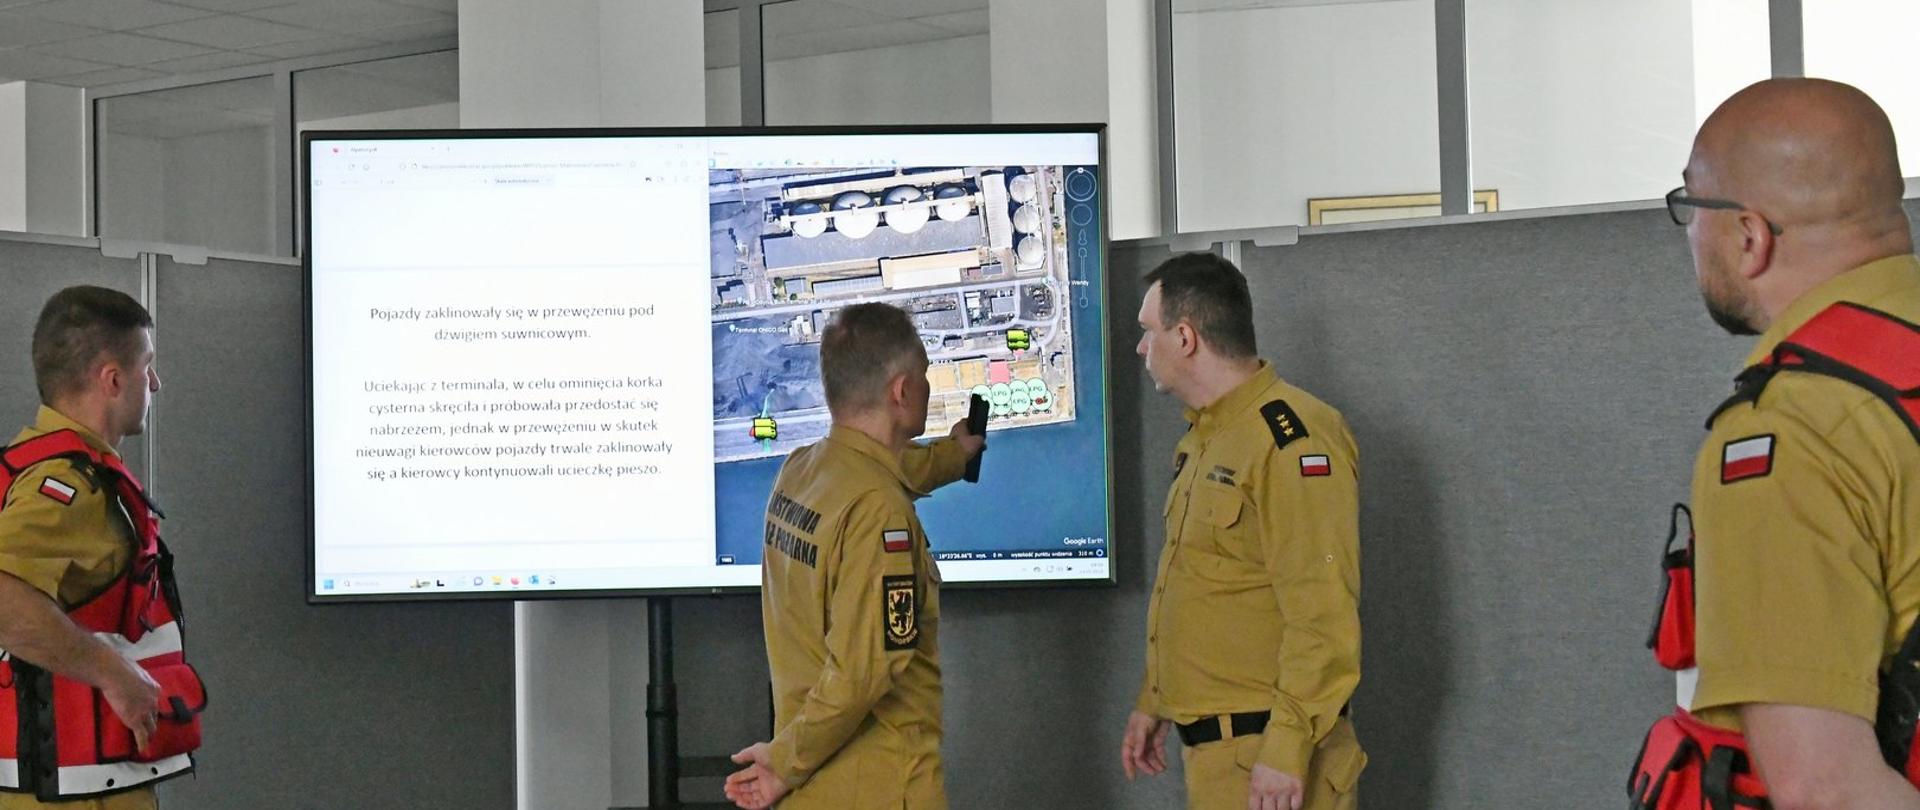 Dwóch funkcjonariuszy stoi przy monitorze na którym wyświetlany jest zakres ćwiczenia dwóch strażaków w czerwonych kamizelkach obserwuje ich działania.